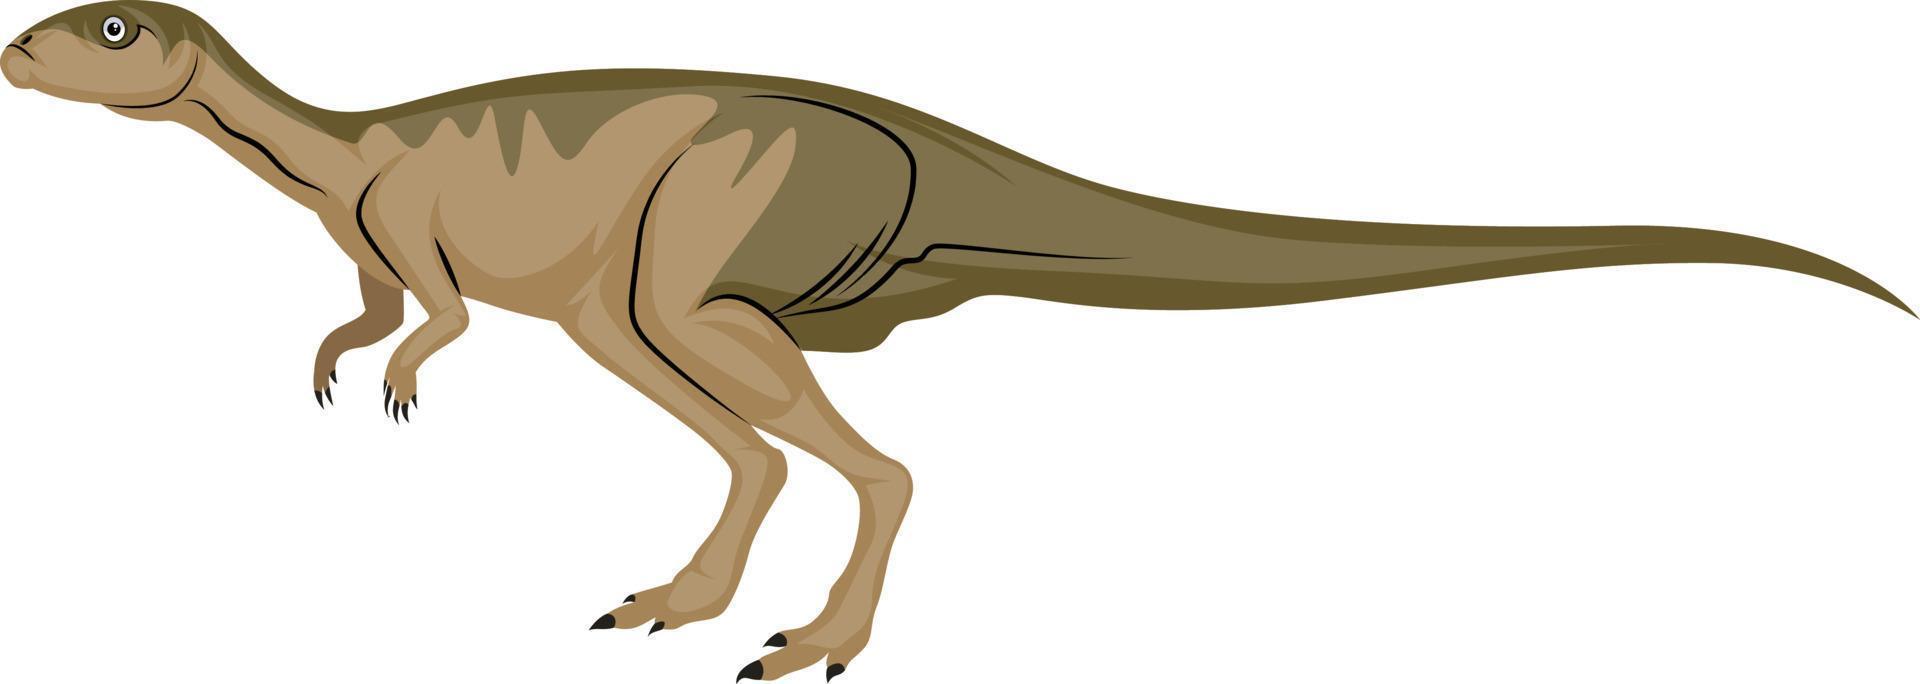 dinosour med lång svans, illustration, vektor på vit bakgrund.